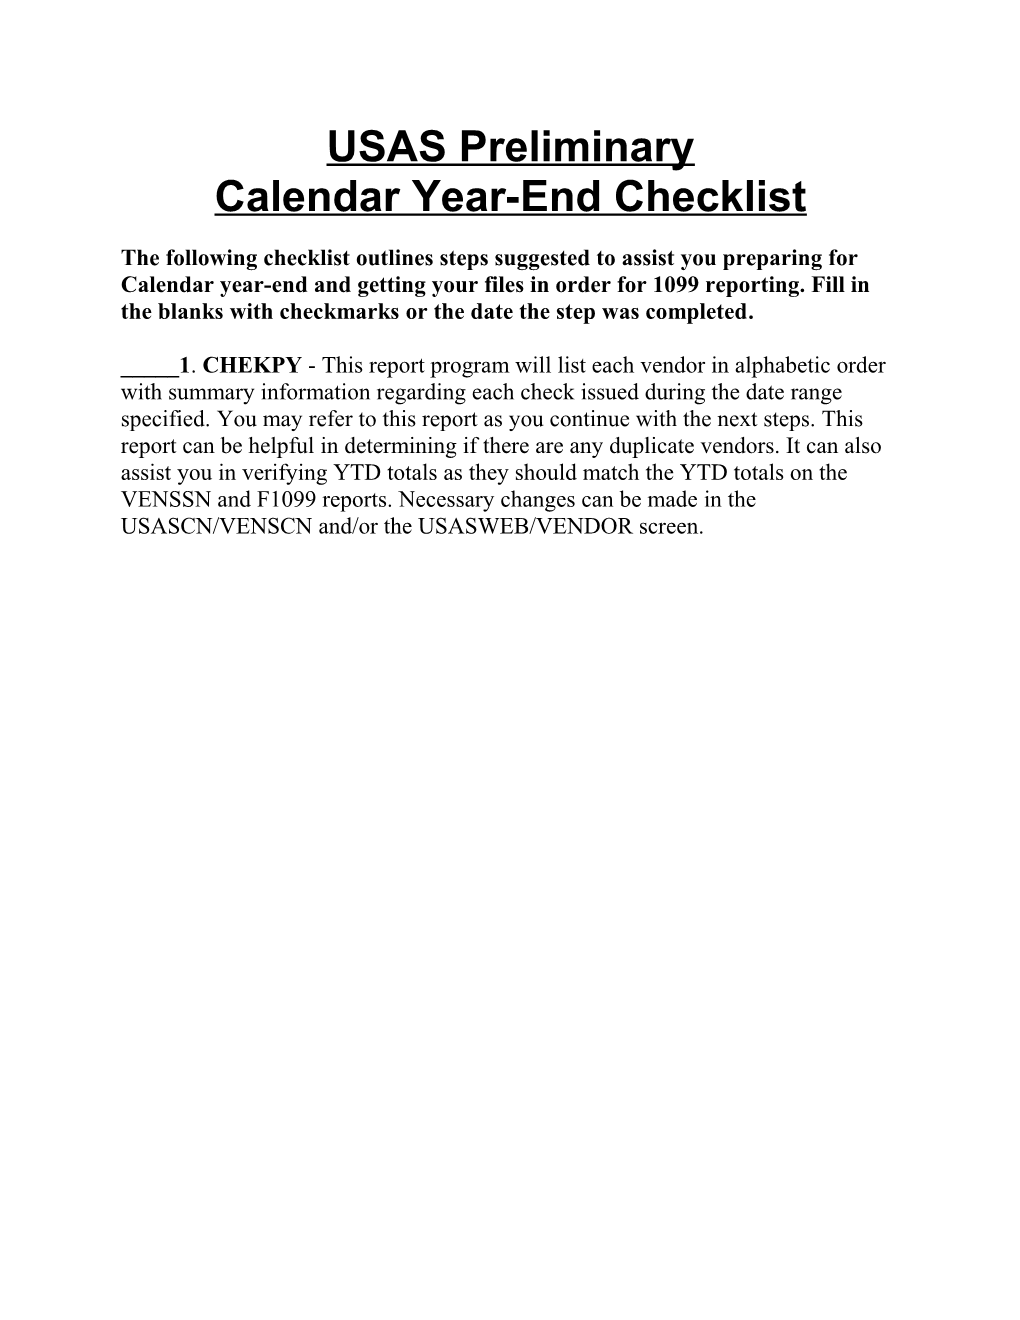 Calendar Year-End Checklist